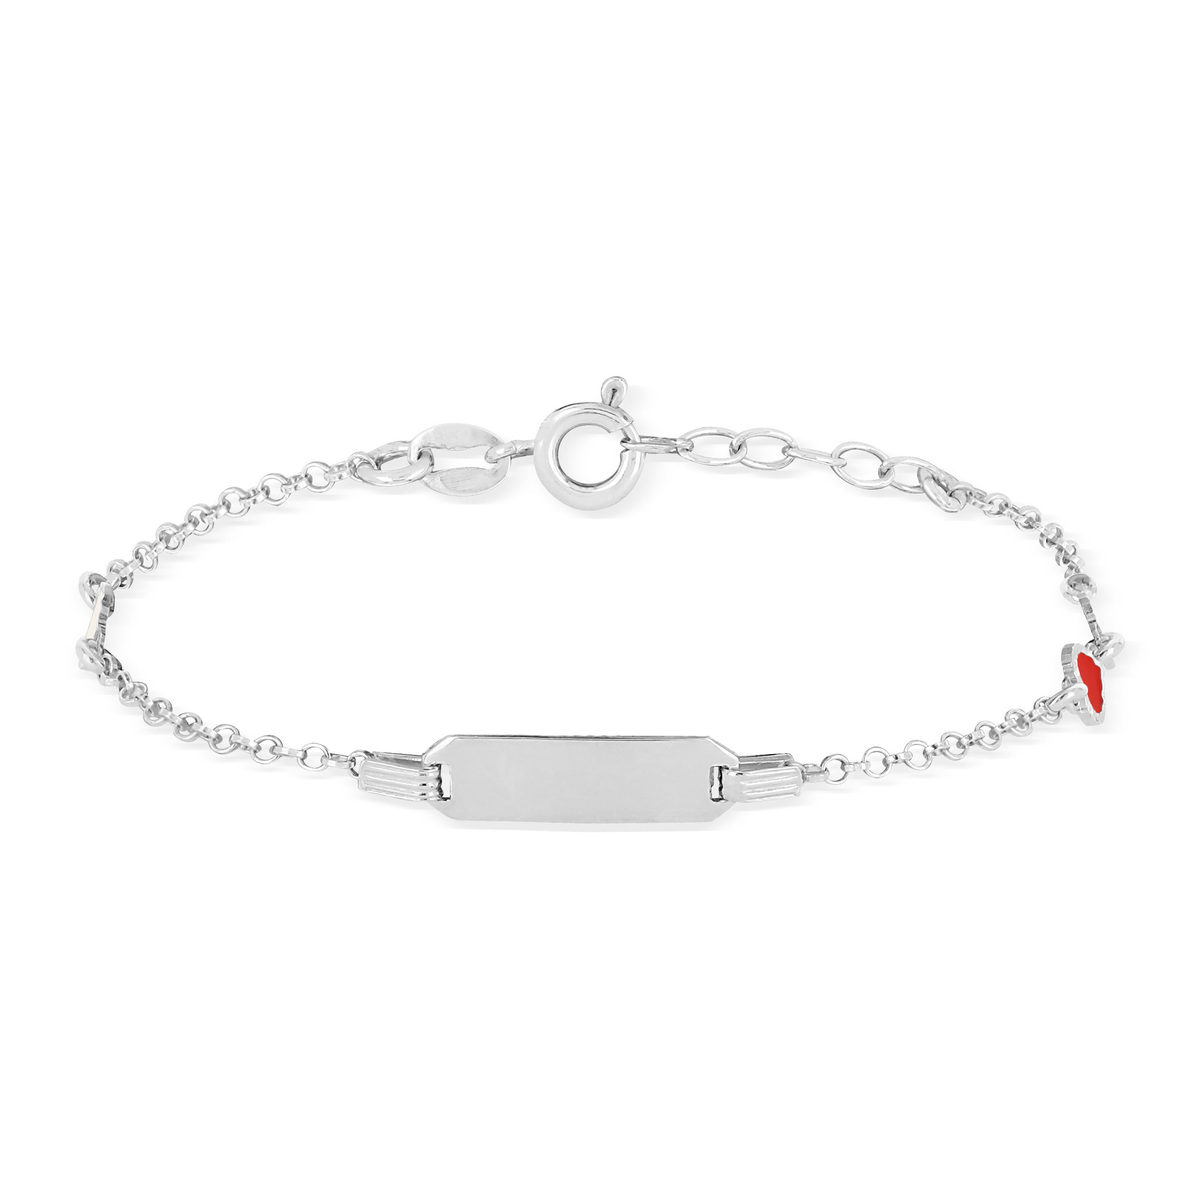 Bracelet identité argent 925 coeurs laque blanche et rouge personnalisable 16 cm - vue 2